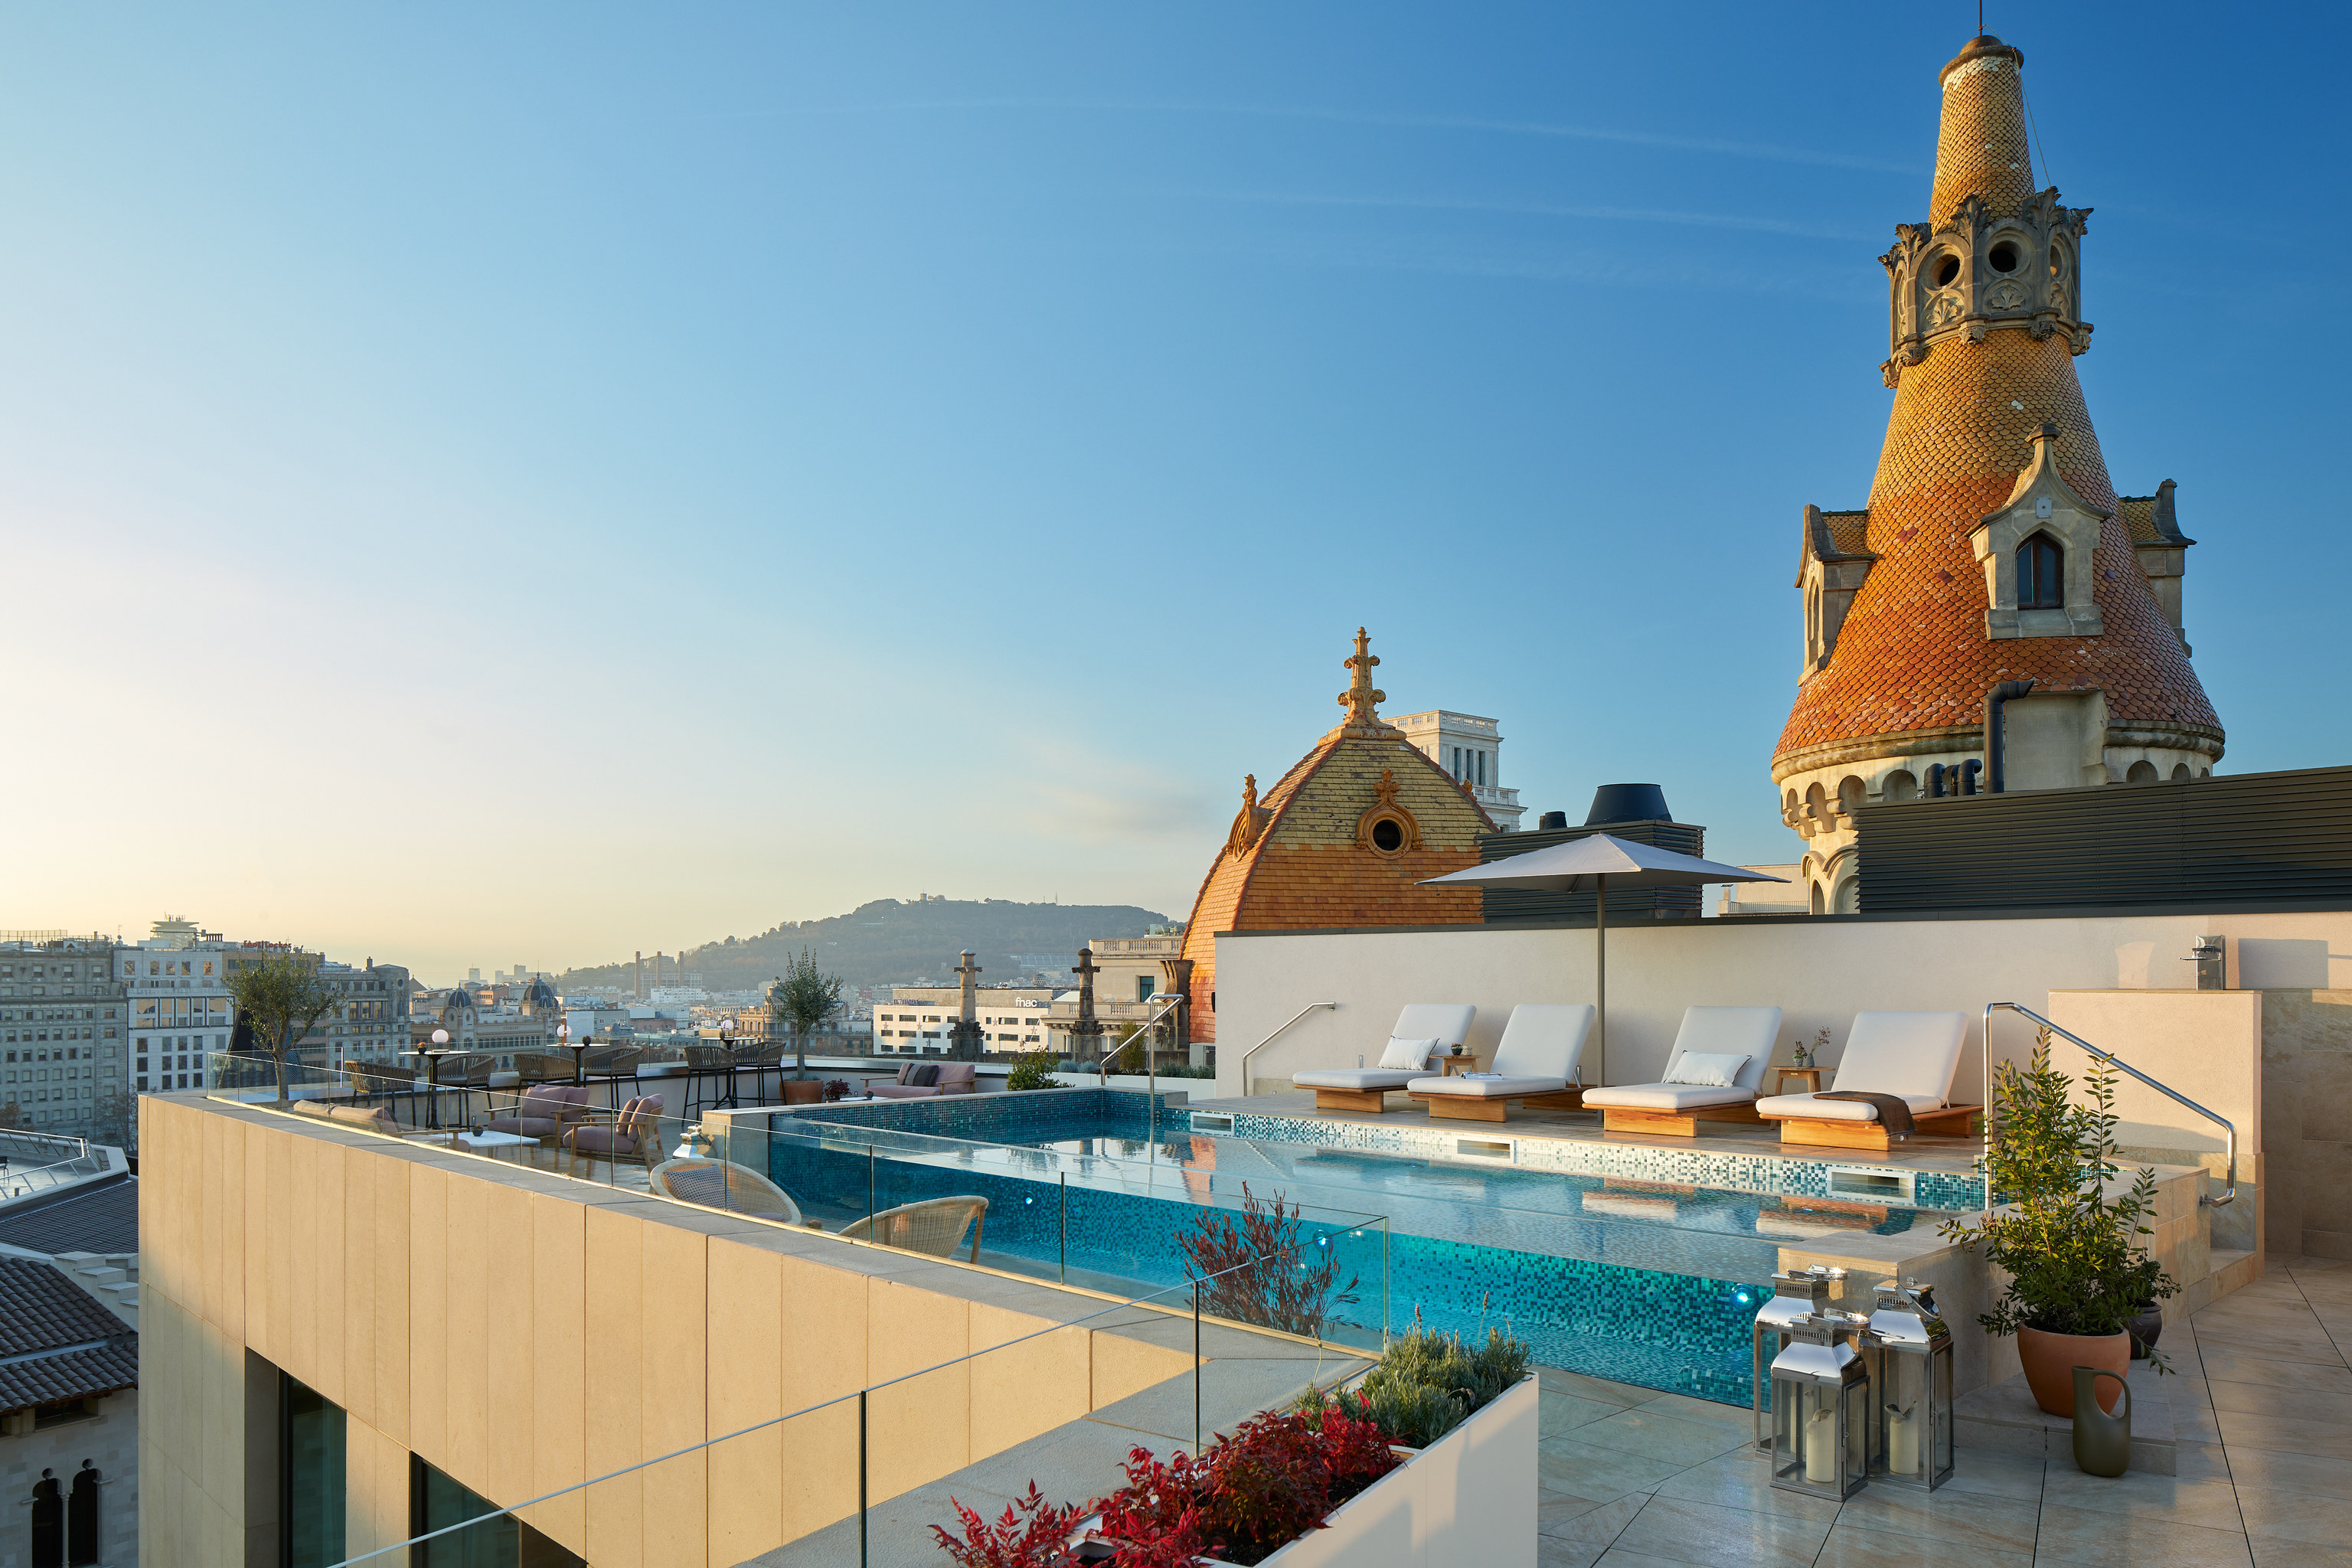 La terraza del hotel, con piscina climatizada.